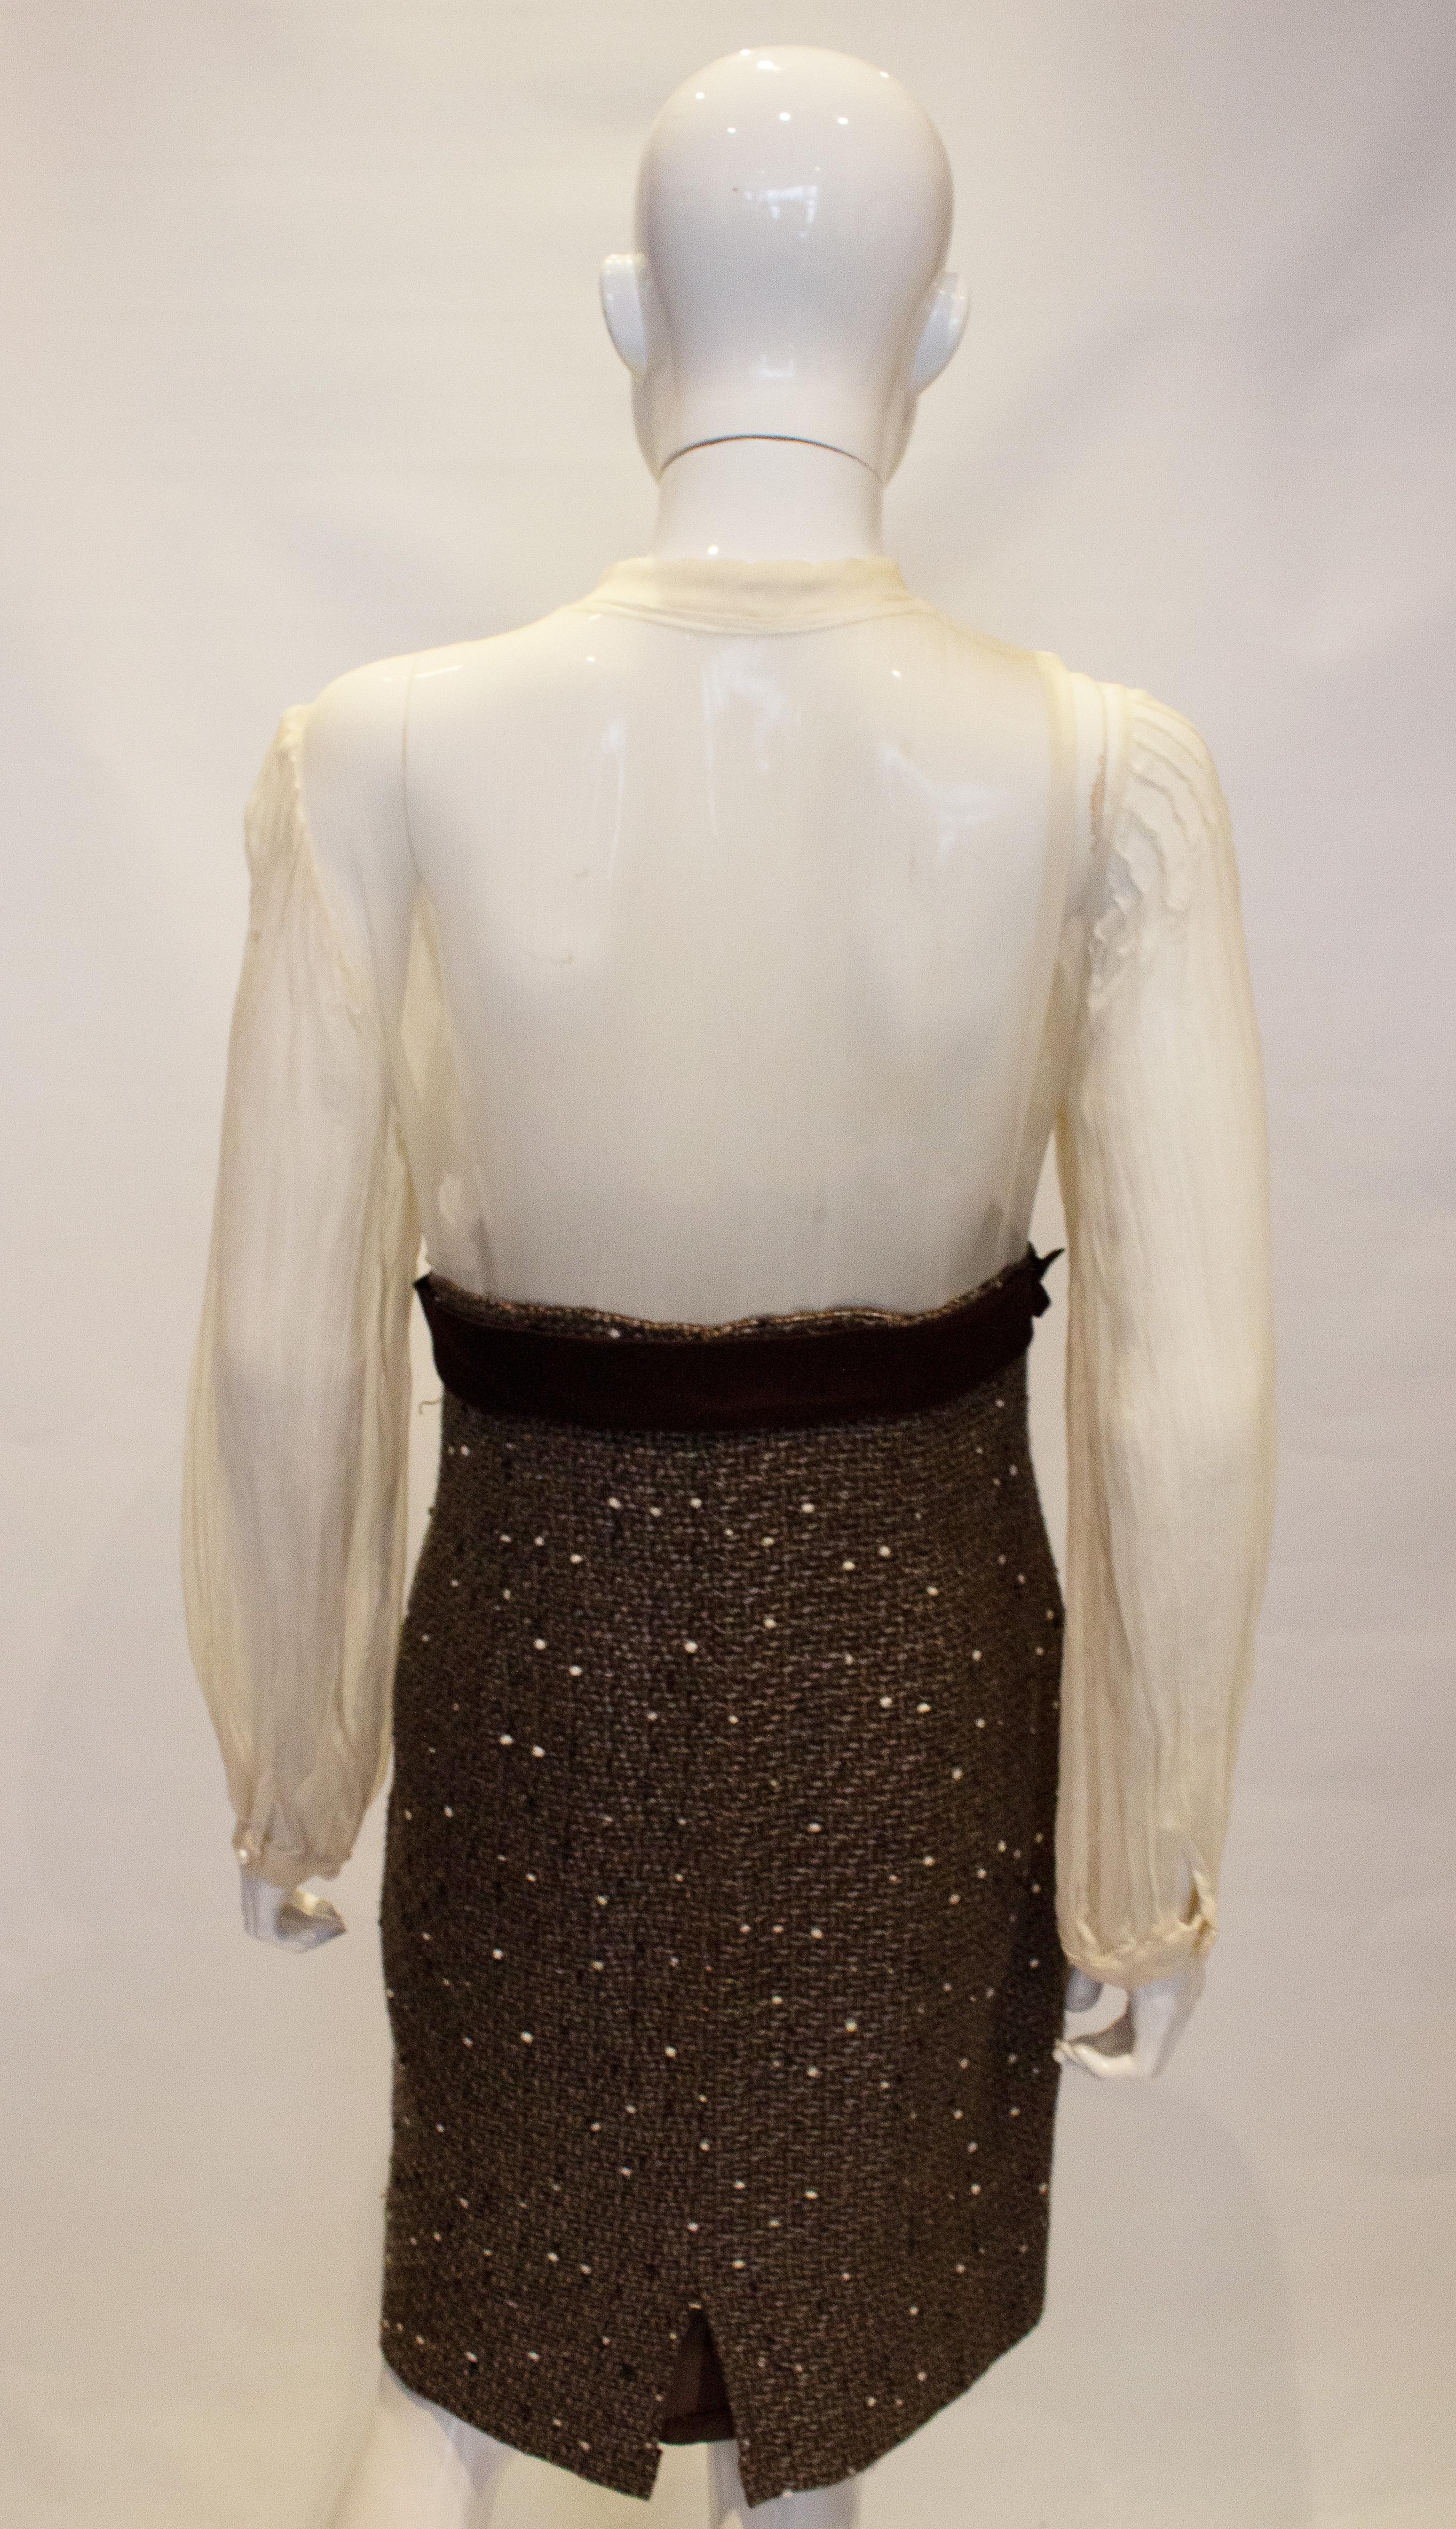 Ein wunderschönes Vintage-Kleid für die Arbeit zum Abendessen. Das Oberteil ist aus durchsichtigem Seidenchiffon und mit Perlen und Spitze verziert. Es hat einen Mandarinenkragen und Falten am Ärmel.  Es gibt eine braune Seidenschleife und einen